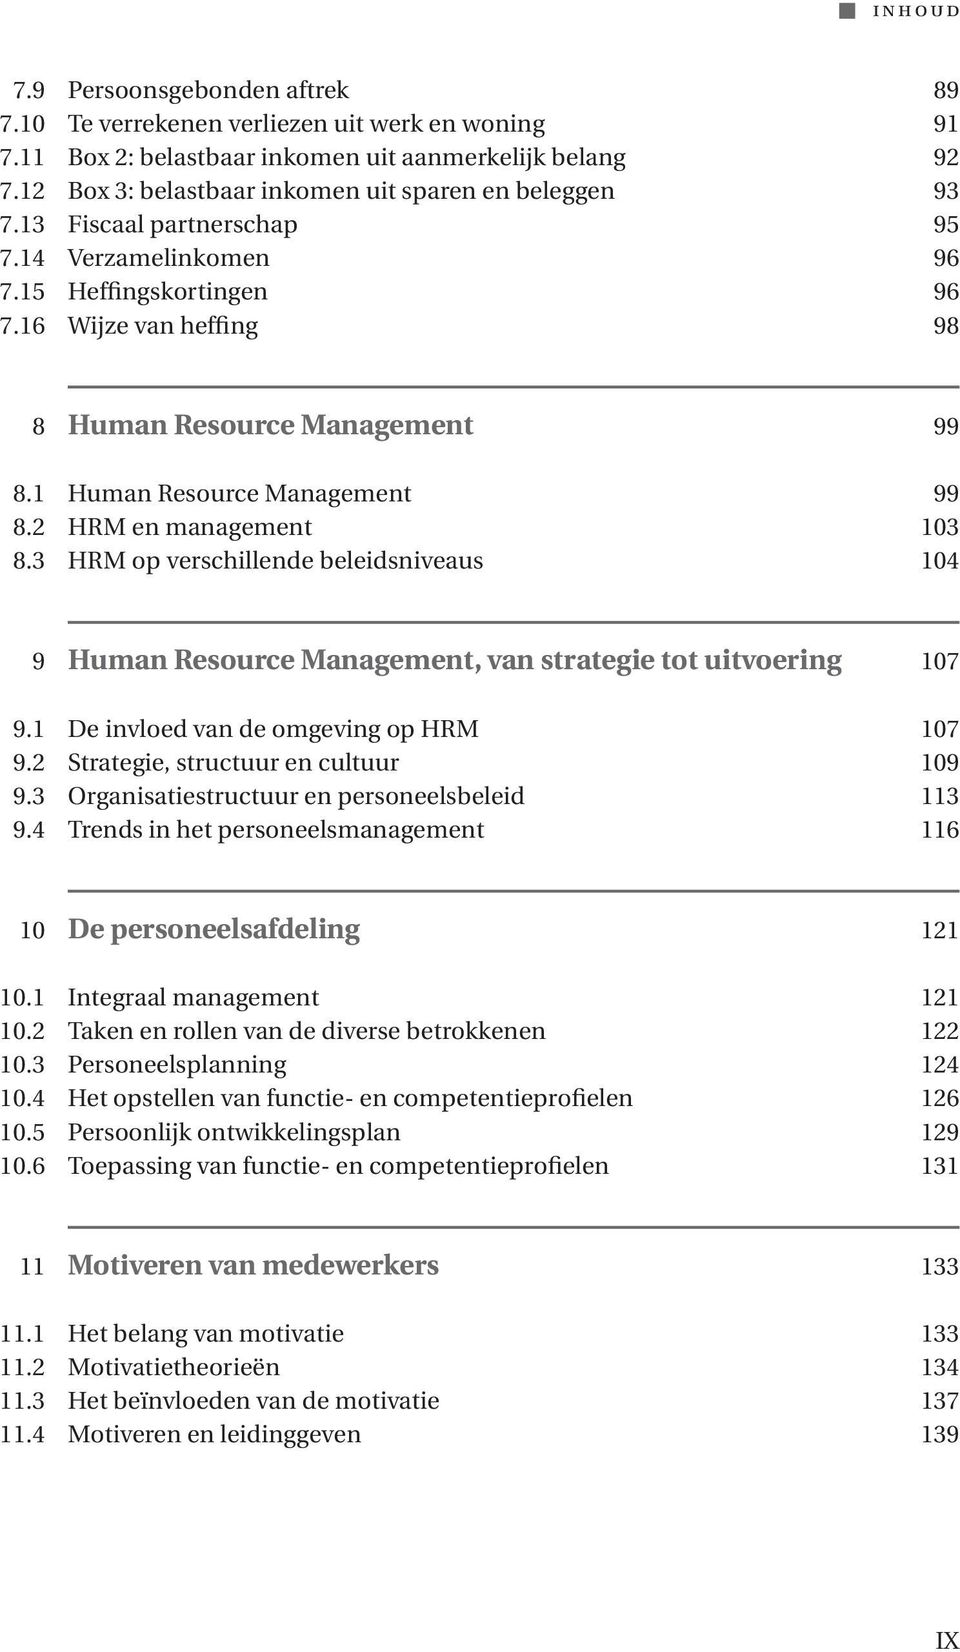 1 Human Resource Management 99 8.2 HRM en management 103 8.3 HRM op verschillende beleidsniveaus 104 9 Human Resource Management, van strategie tot uitvoering 107 9.